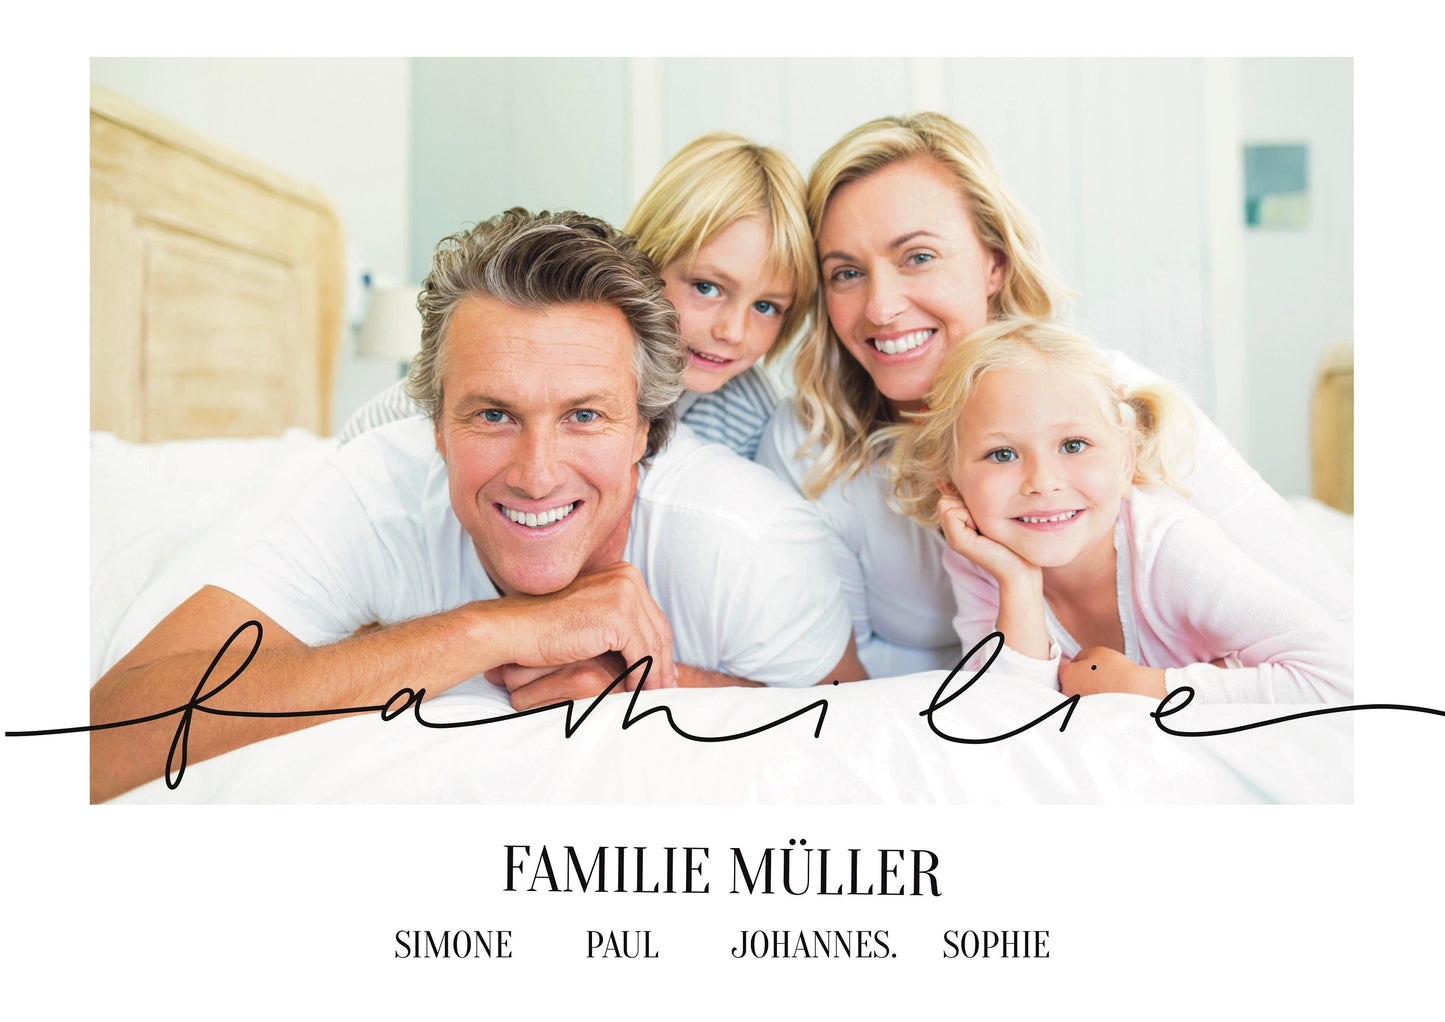 Familienfotos mit persönlichen Messages personalisieren